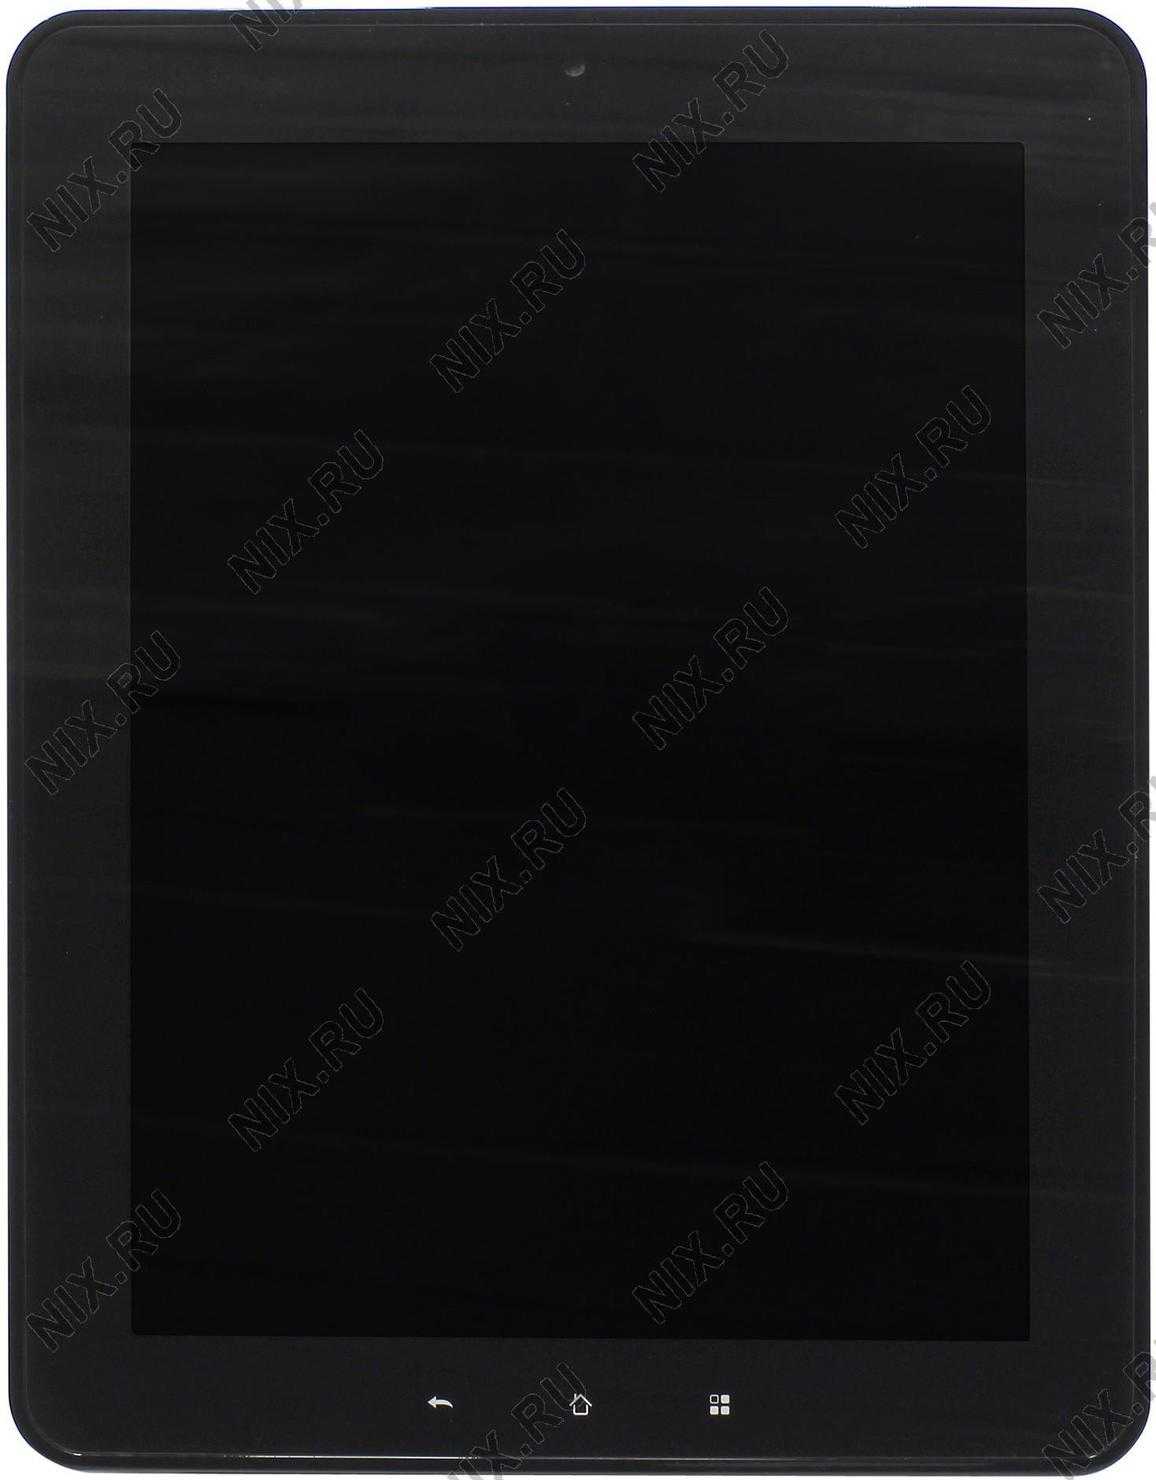 Планшет 3q surf lc9704a 8 гб wifi черный — купить, цена и характеристики, отзывы